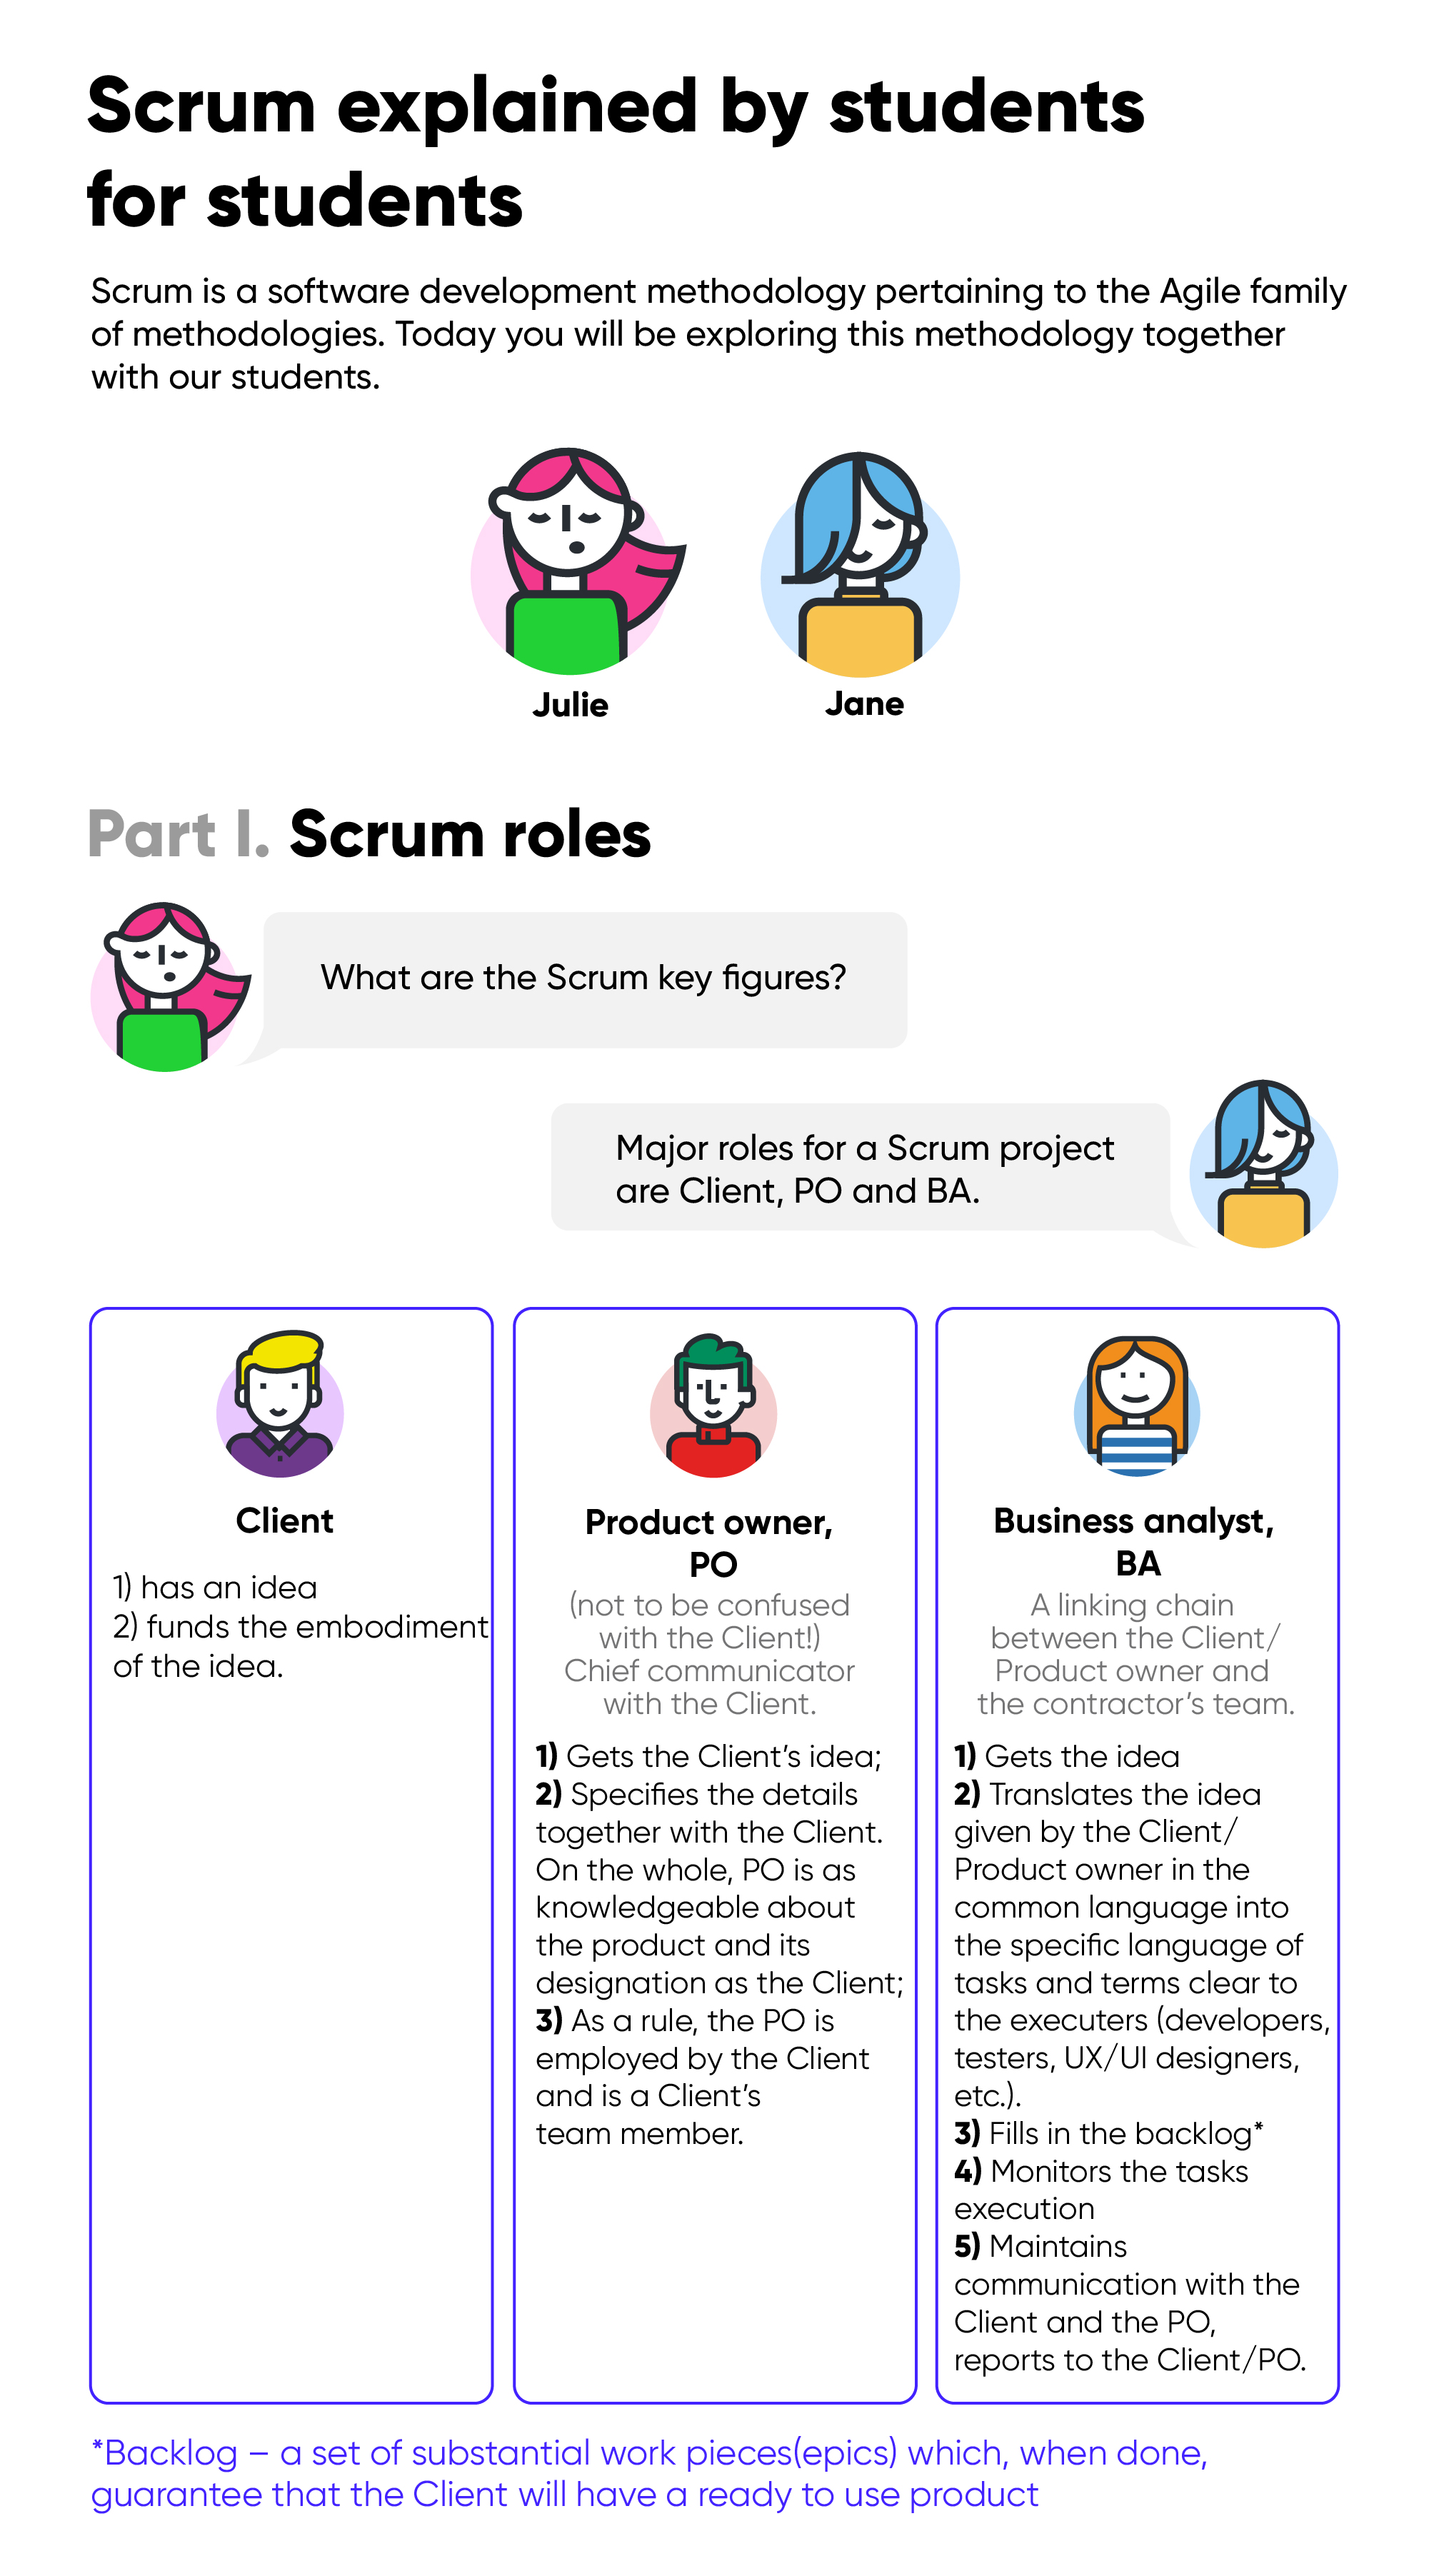 Roles in Scrum